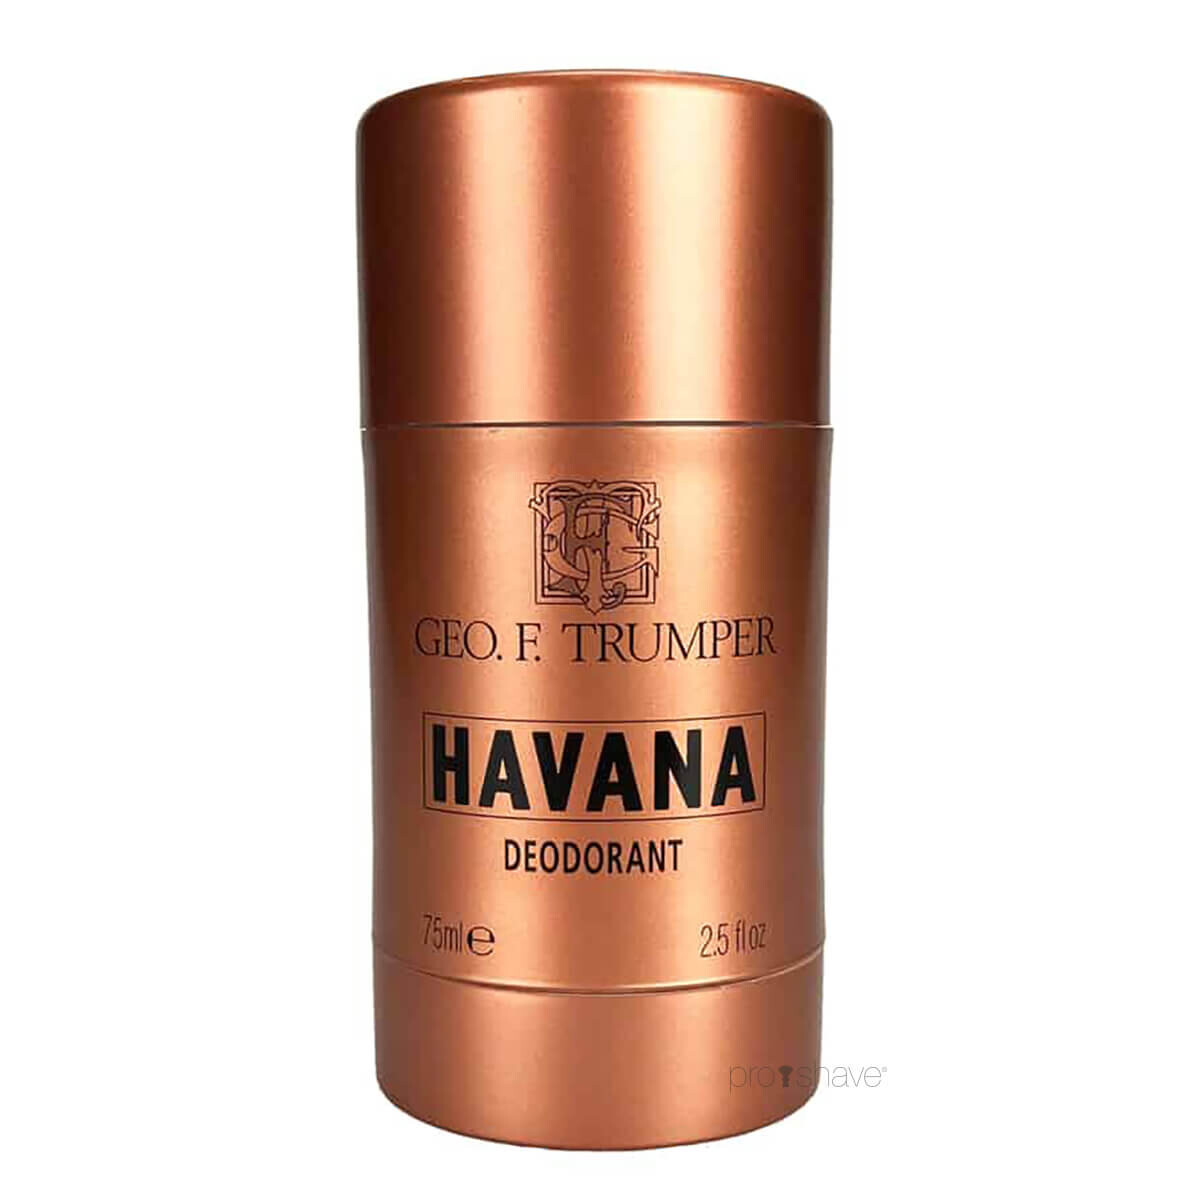 Geo F Trumper Deodorant Stick, Havana, 75 ml.